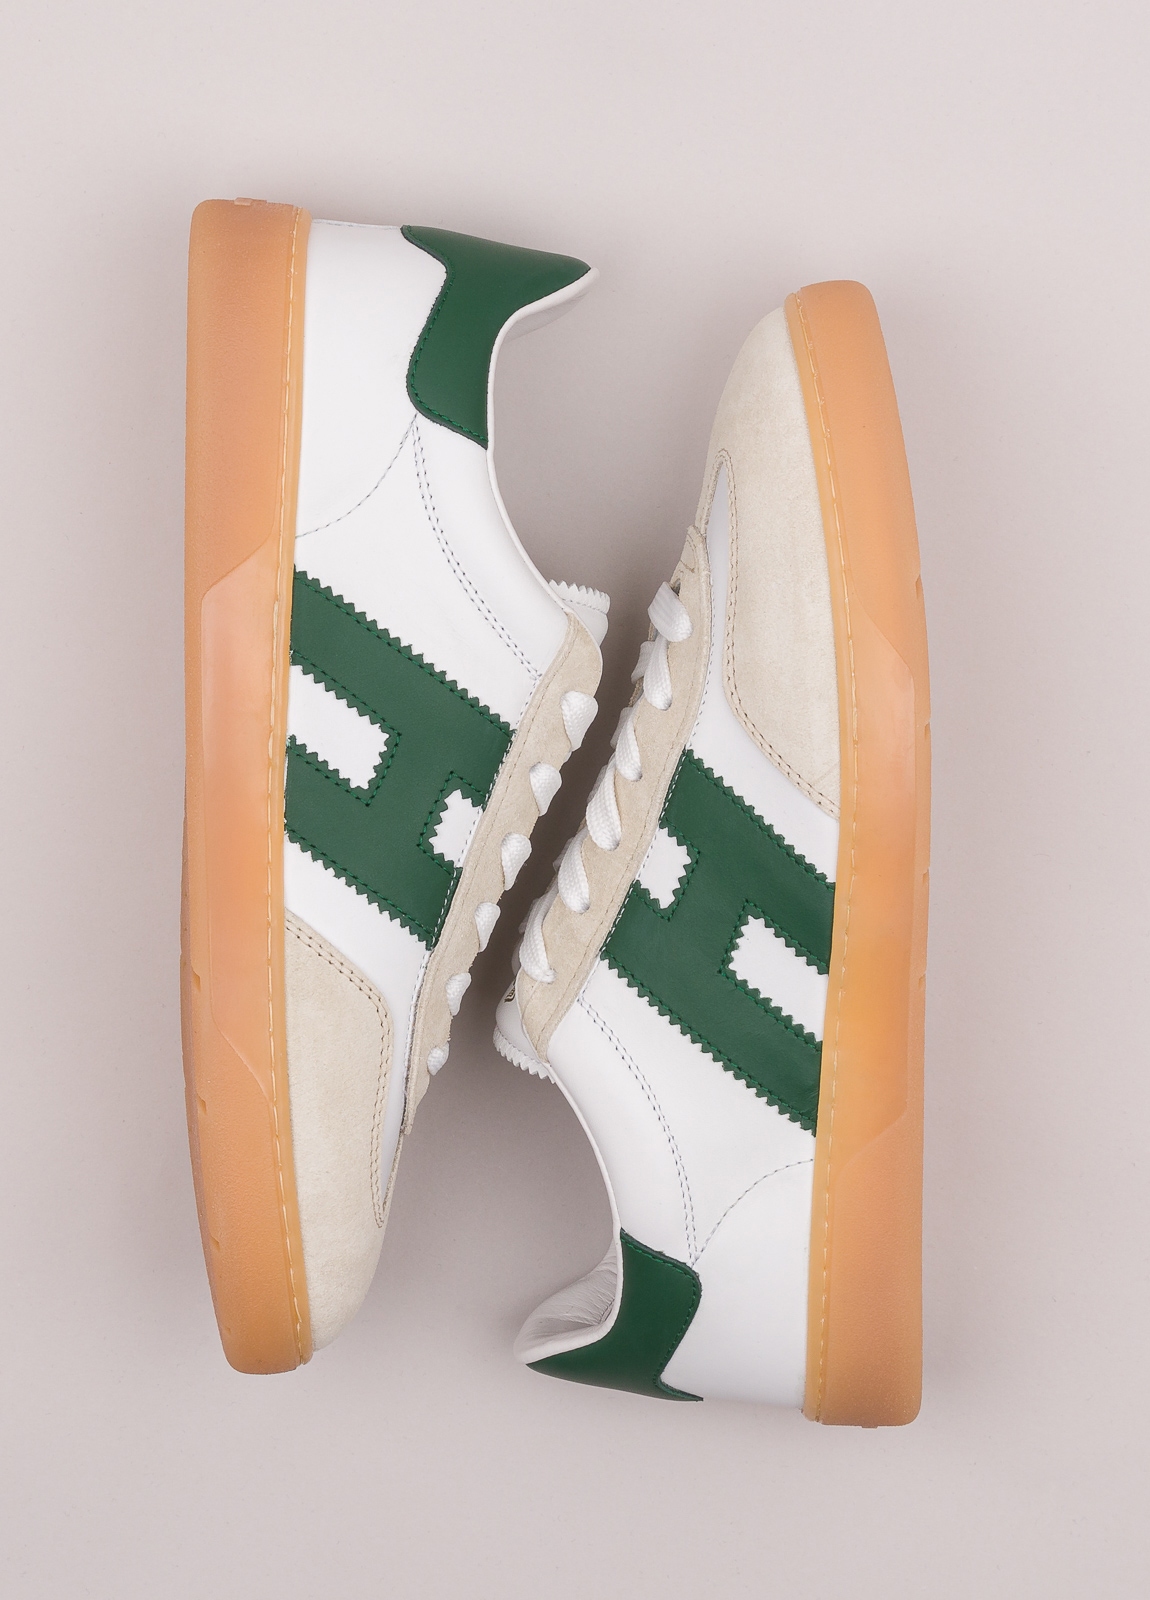 Zapatillas deportivas HOGAN color blanco, beige y verde - Ítem5